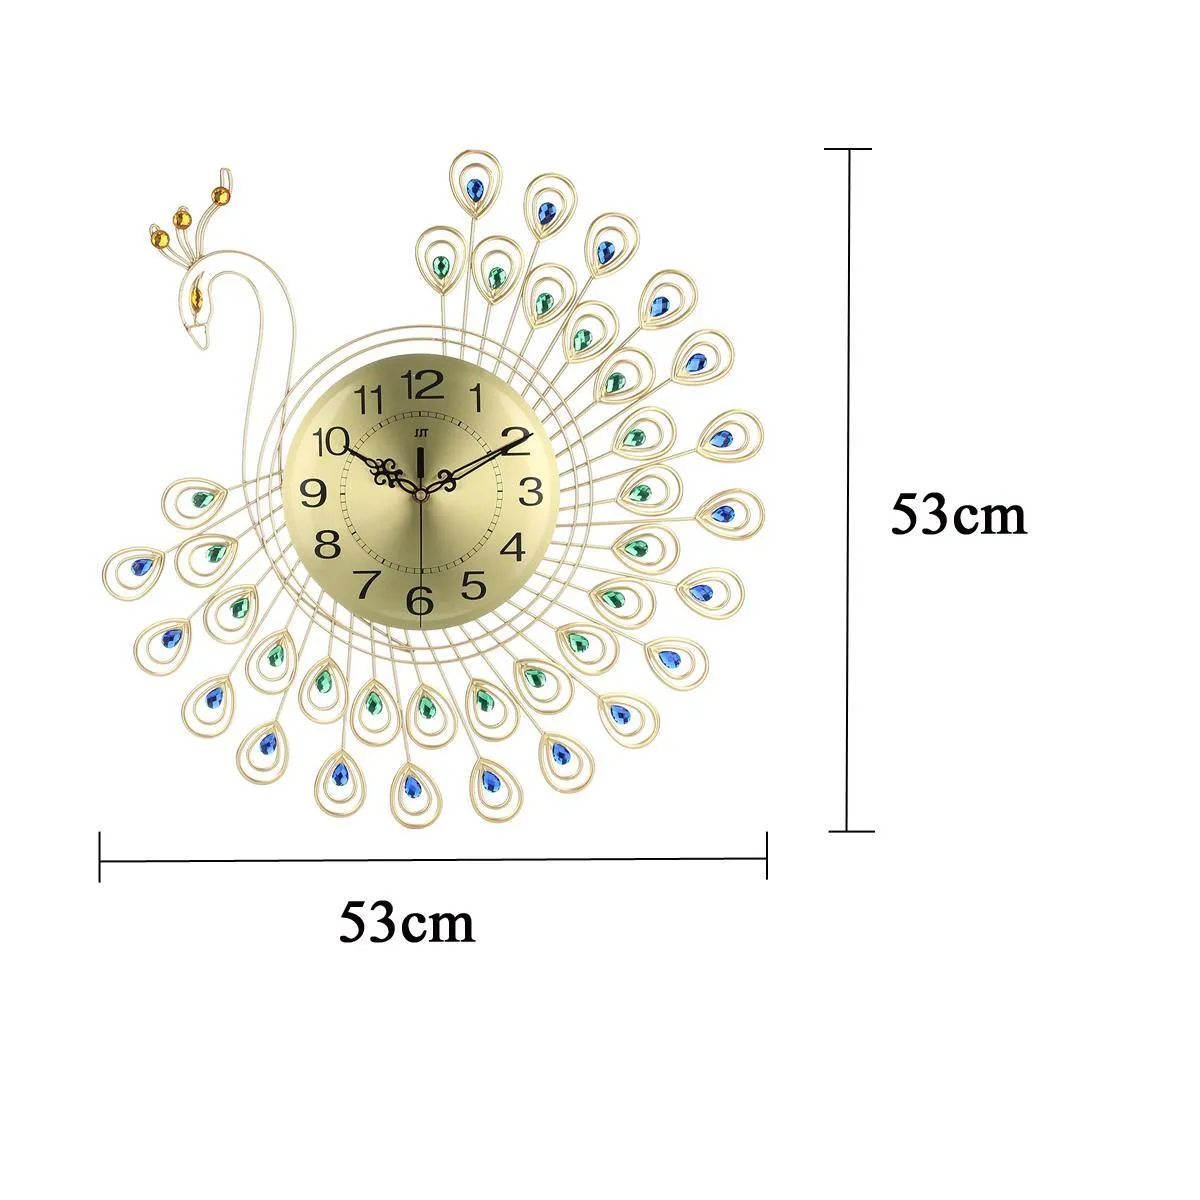 Grand 3D Or Diamant Paon Horloge Murale Montre En Métal pour La Maison Salon Décoration DIY Horloges Artisanat Ornements Cadeau 53x53cm Y200109